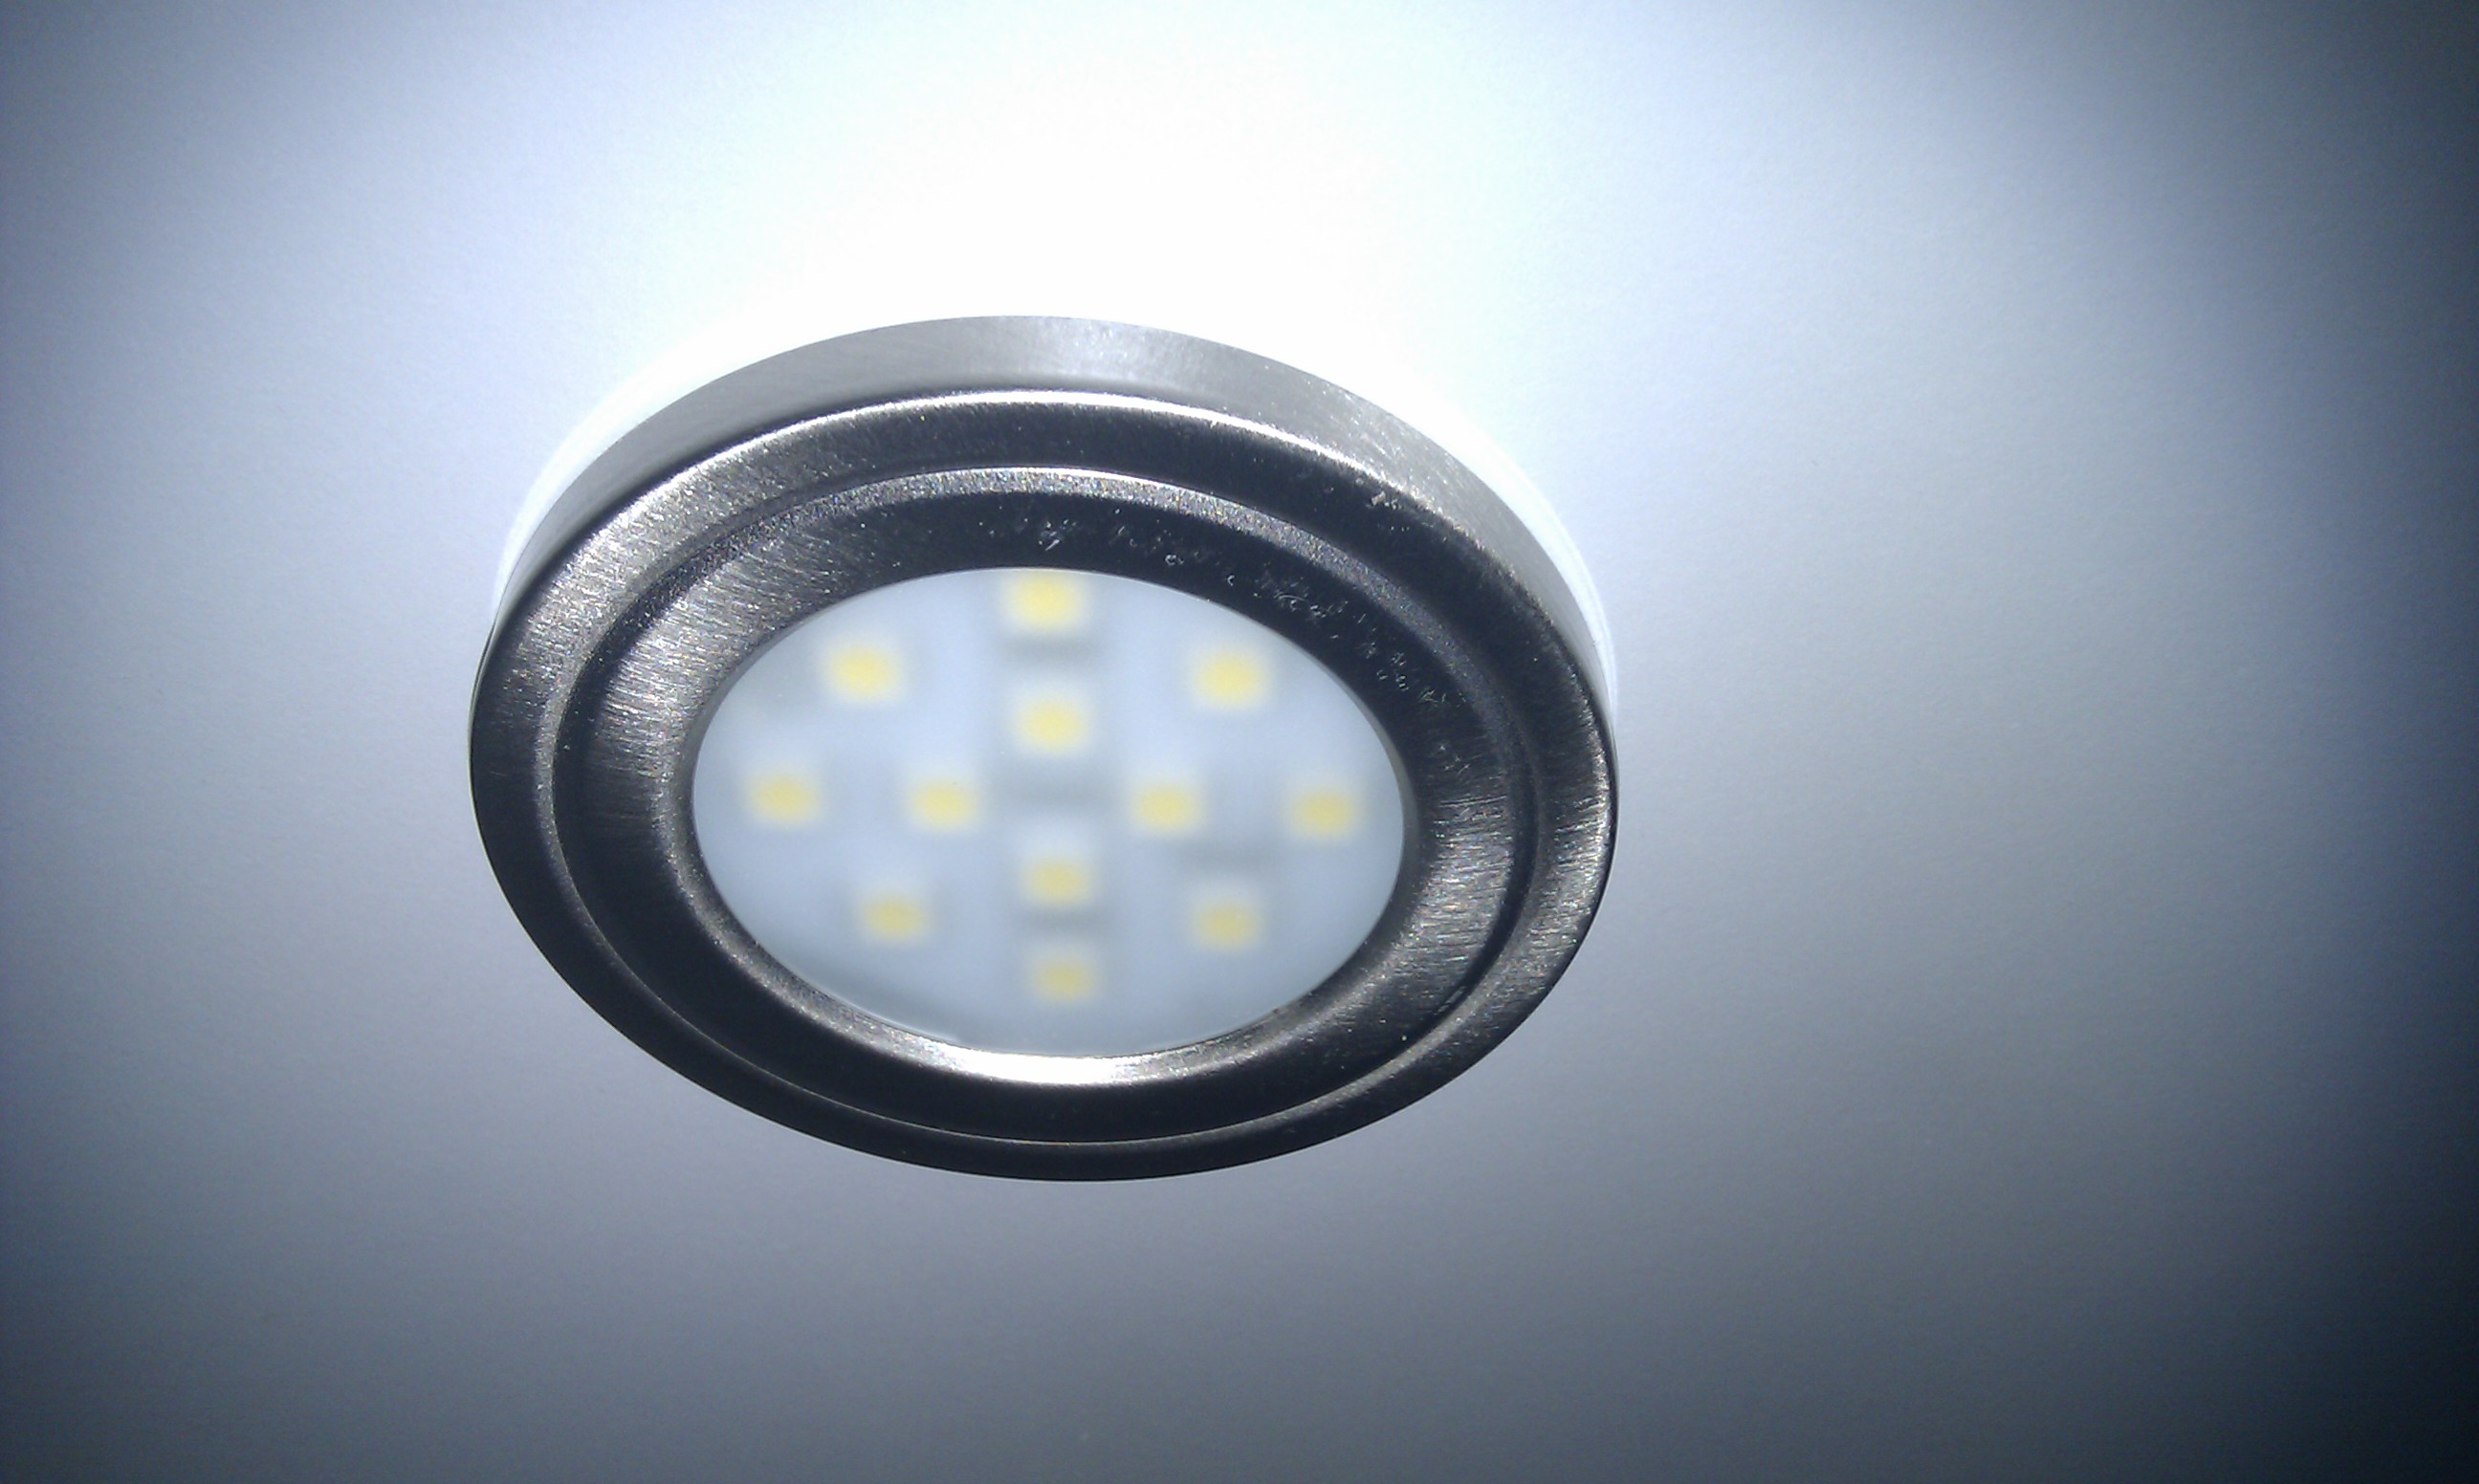 Belysning kjøkken - LED downlights under overskap.jpg - BeritS